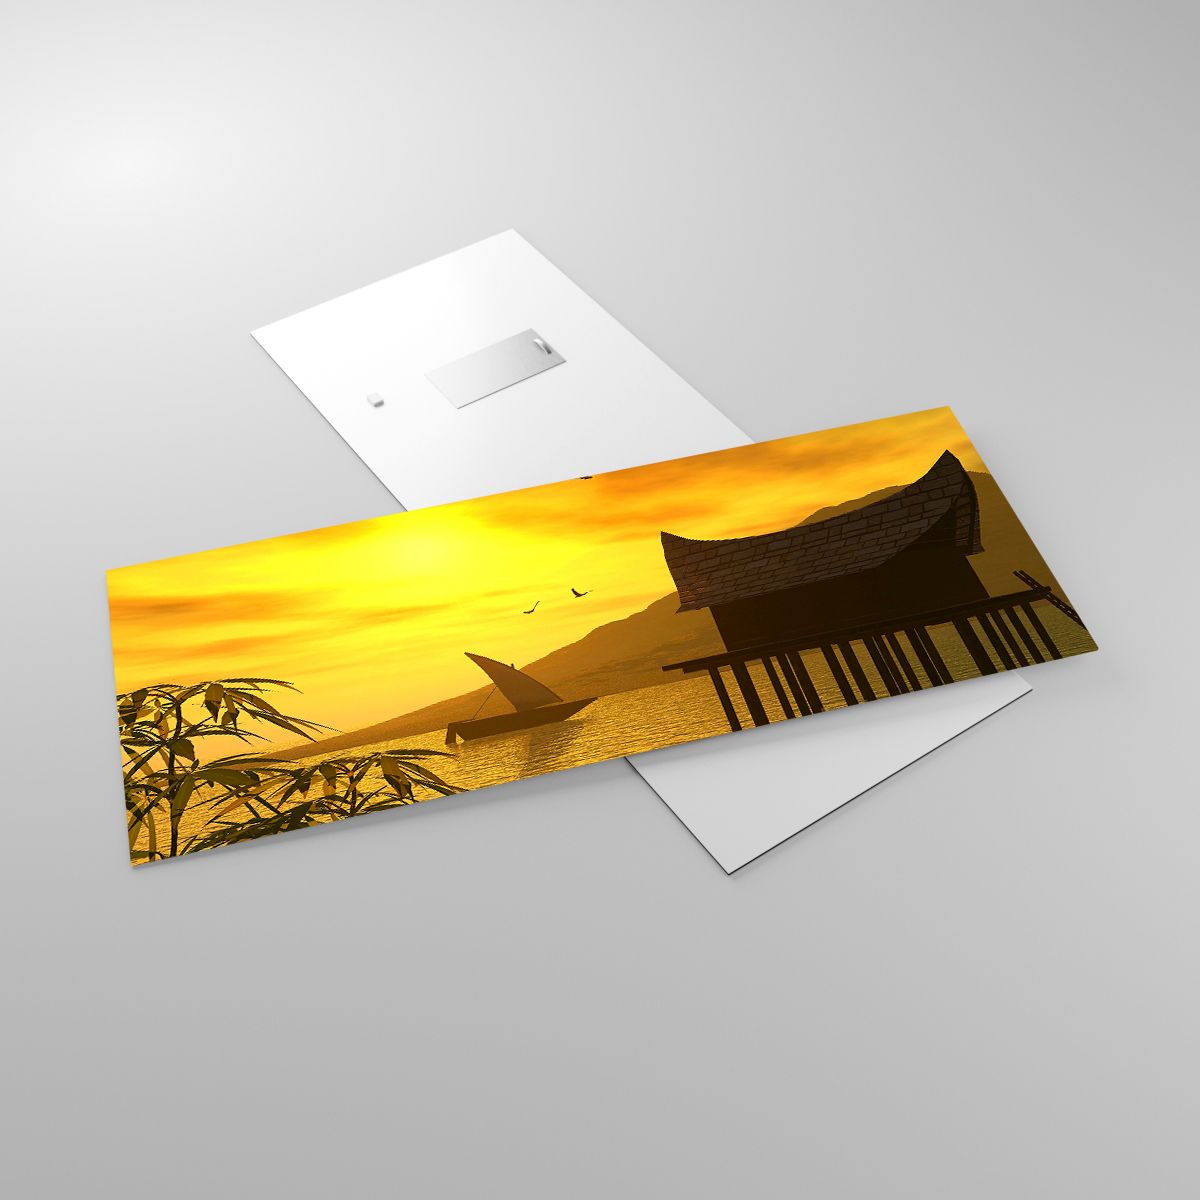 Glasbild Landschaft, Glasbild Der Sonnenuntergang, Glasbild Asien, Glasbild Natur, Glasbild Meer